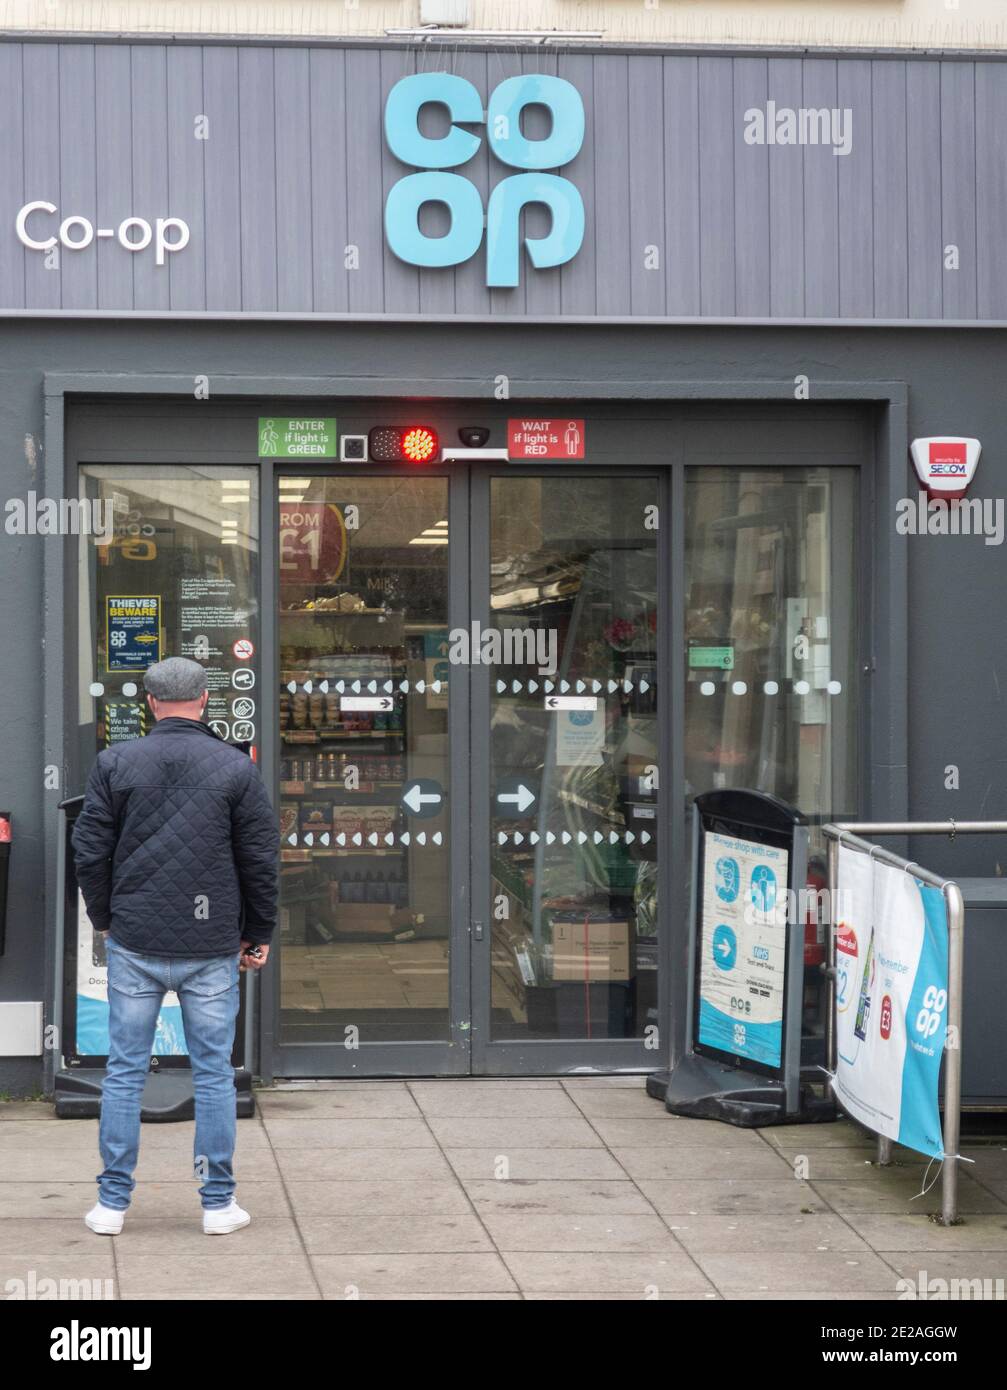 Un homme attend d'entrer dans un système de feux de circulation, Co op supermarché magasin pendant les restrictions Covid coronavirus à Sidmouth Devon Royaume-Uni Banque D'Images